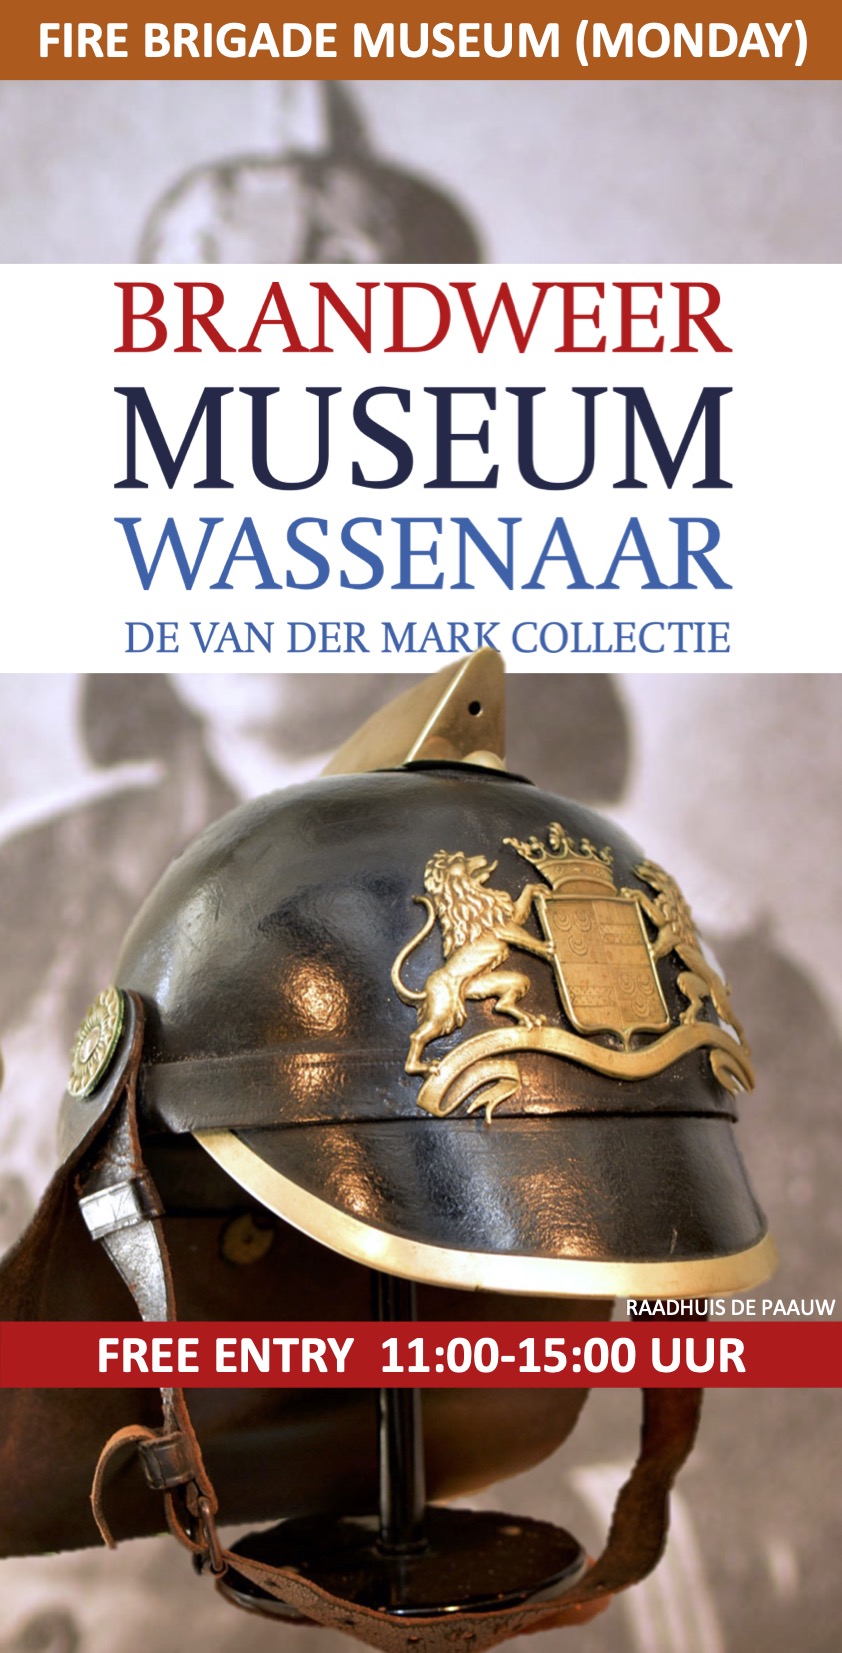 Brandweermuseum Wassenaar in De Pauw